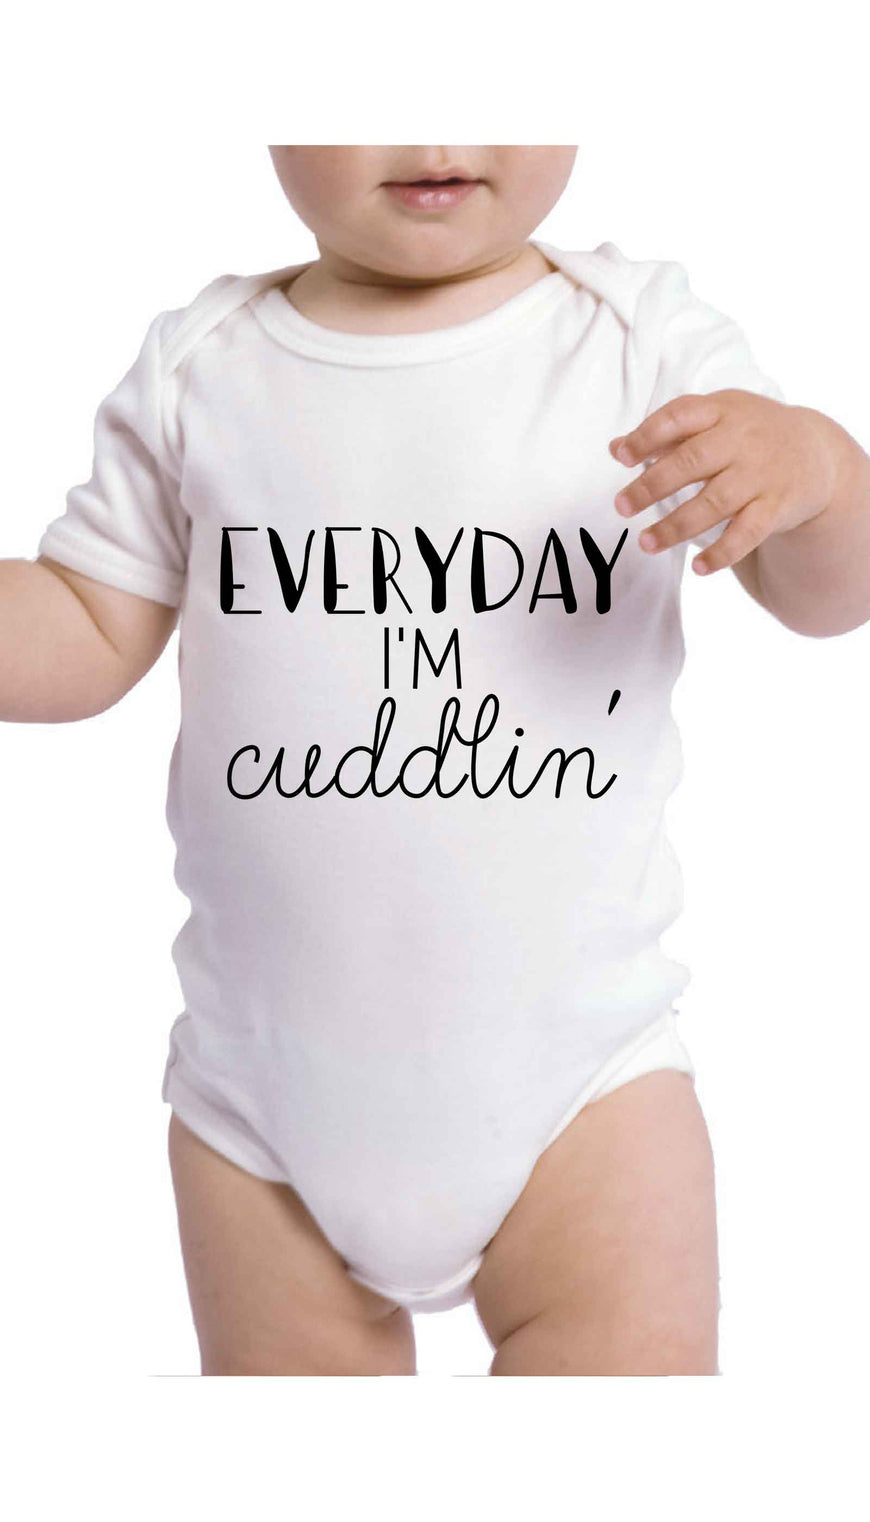 Everyday I'm Cuddlin' Cute & Funny Baby Infant Onesie